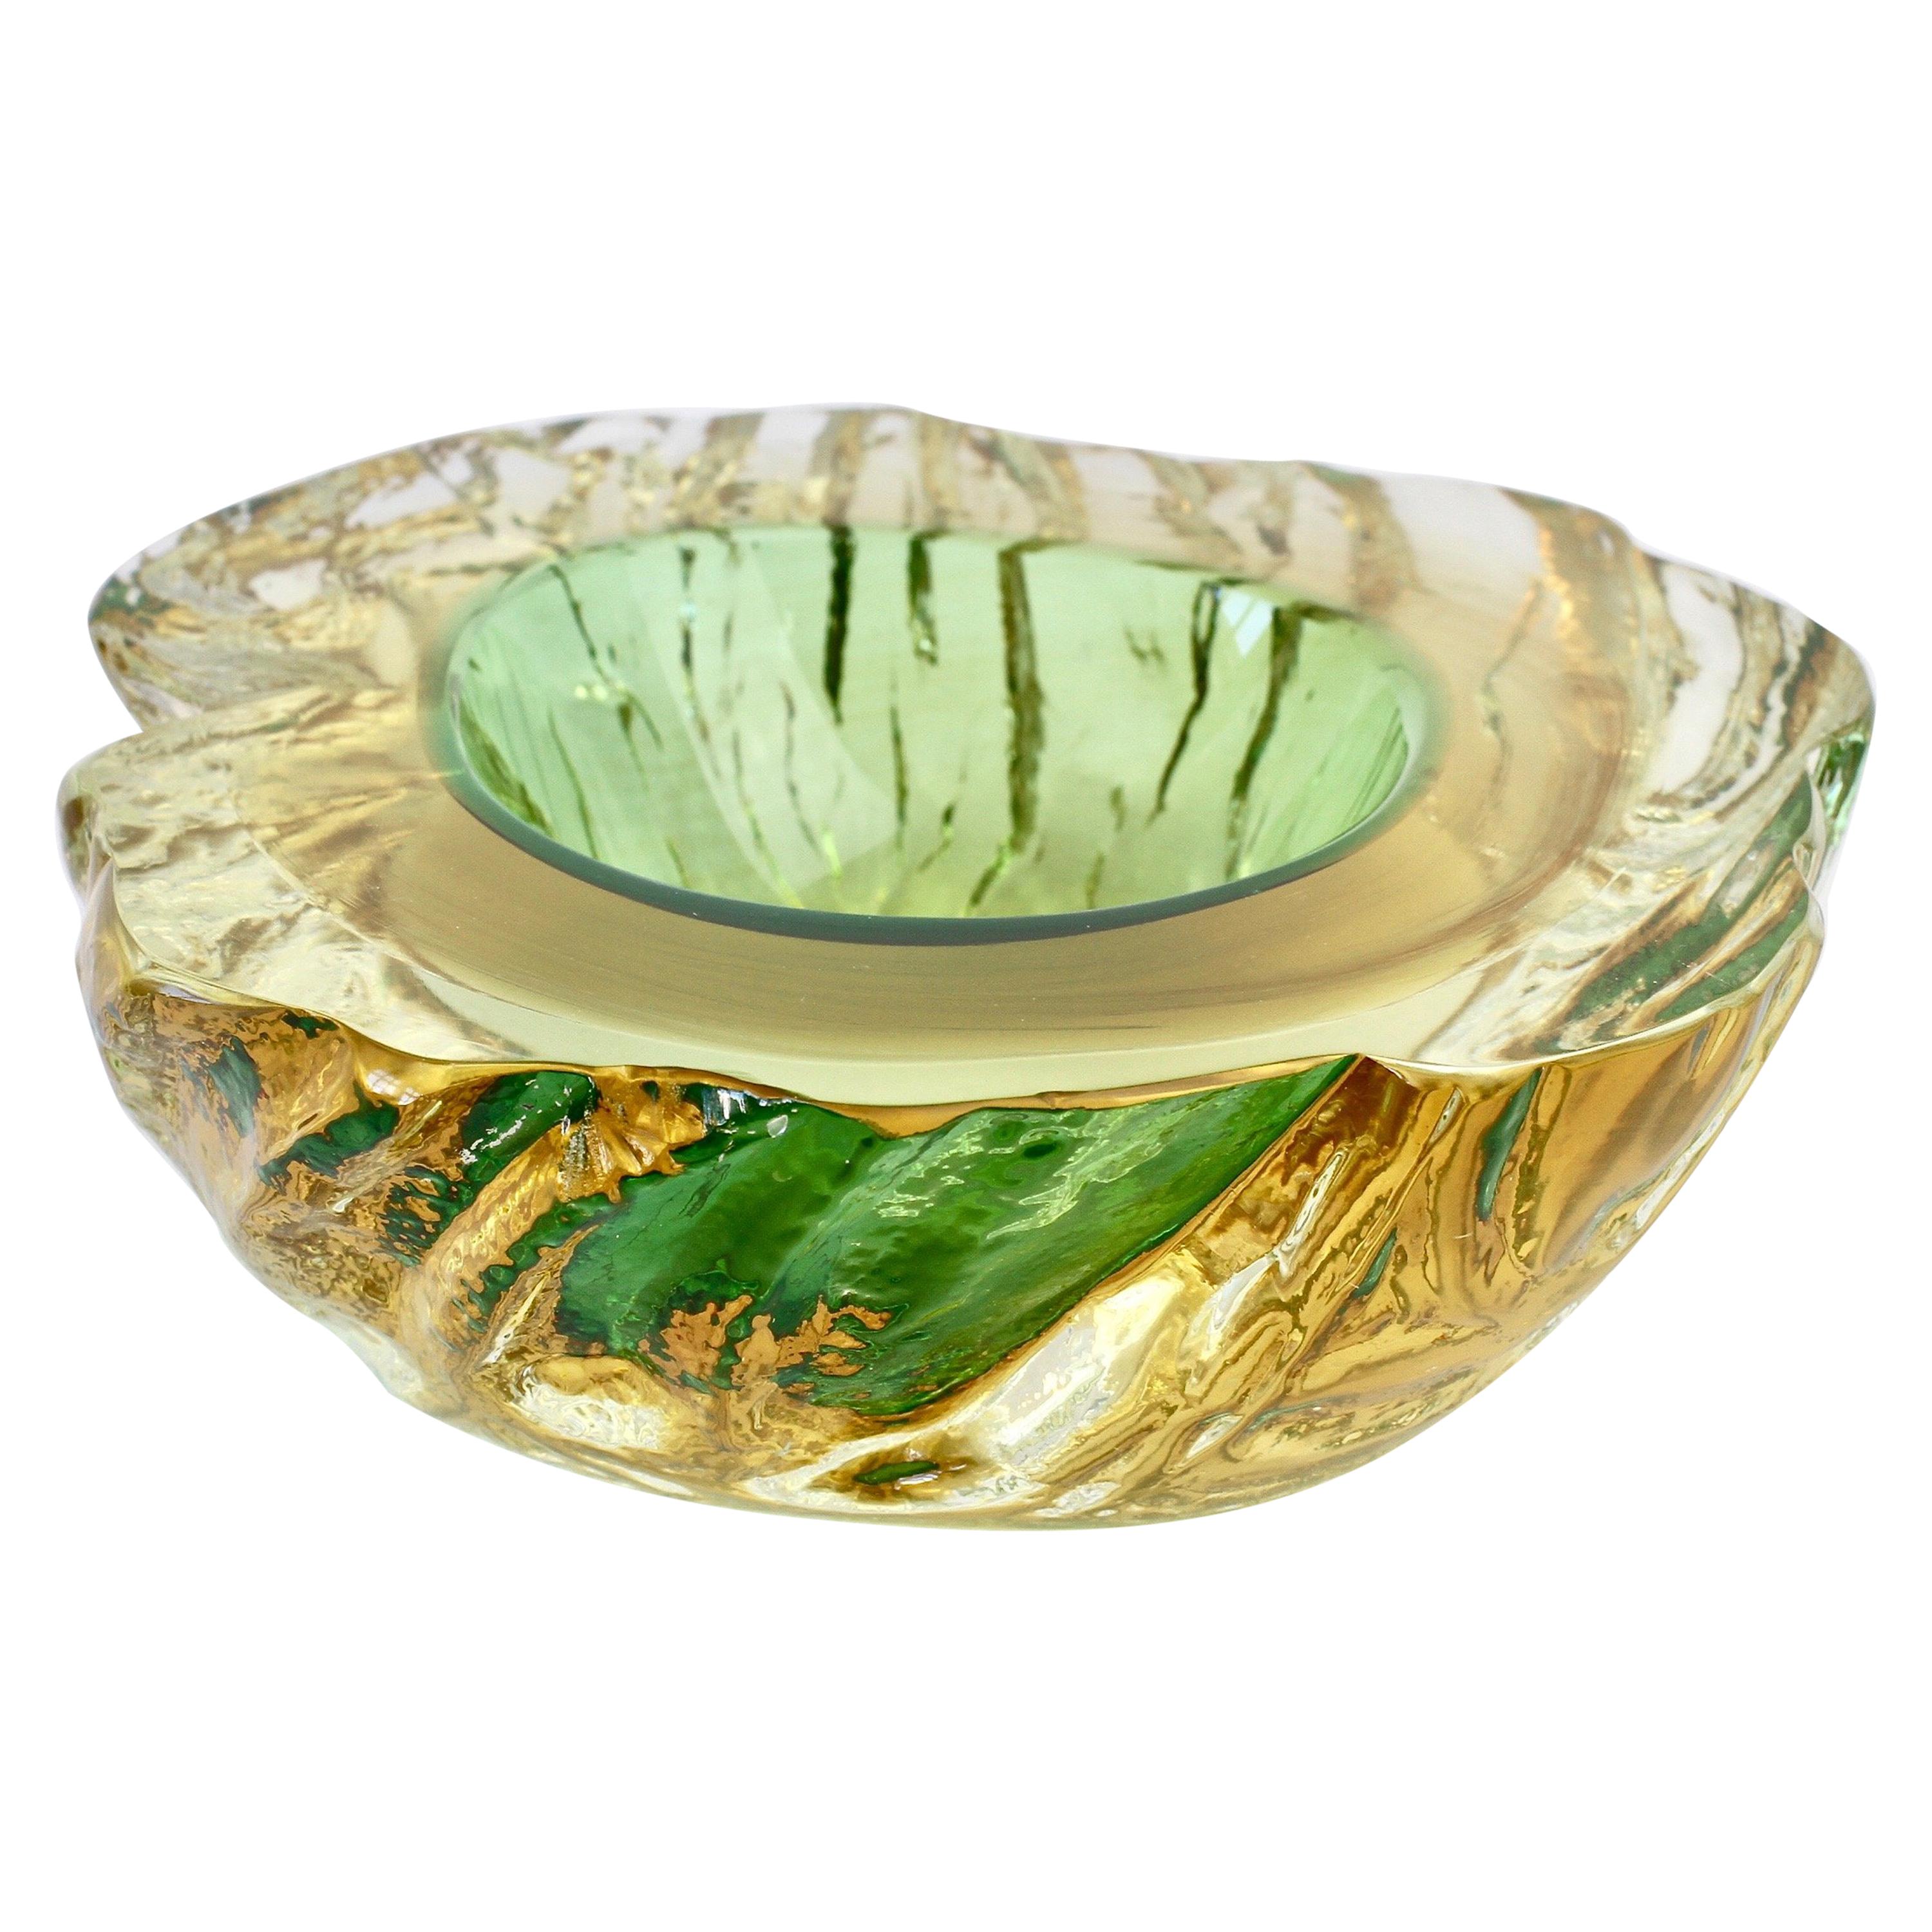 Maurizio Albarelli Attributed Italian Yellow & Green Textured Murano Glass Bowl